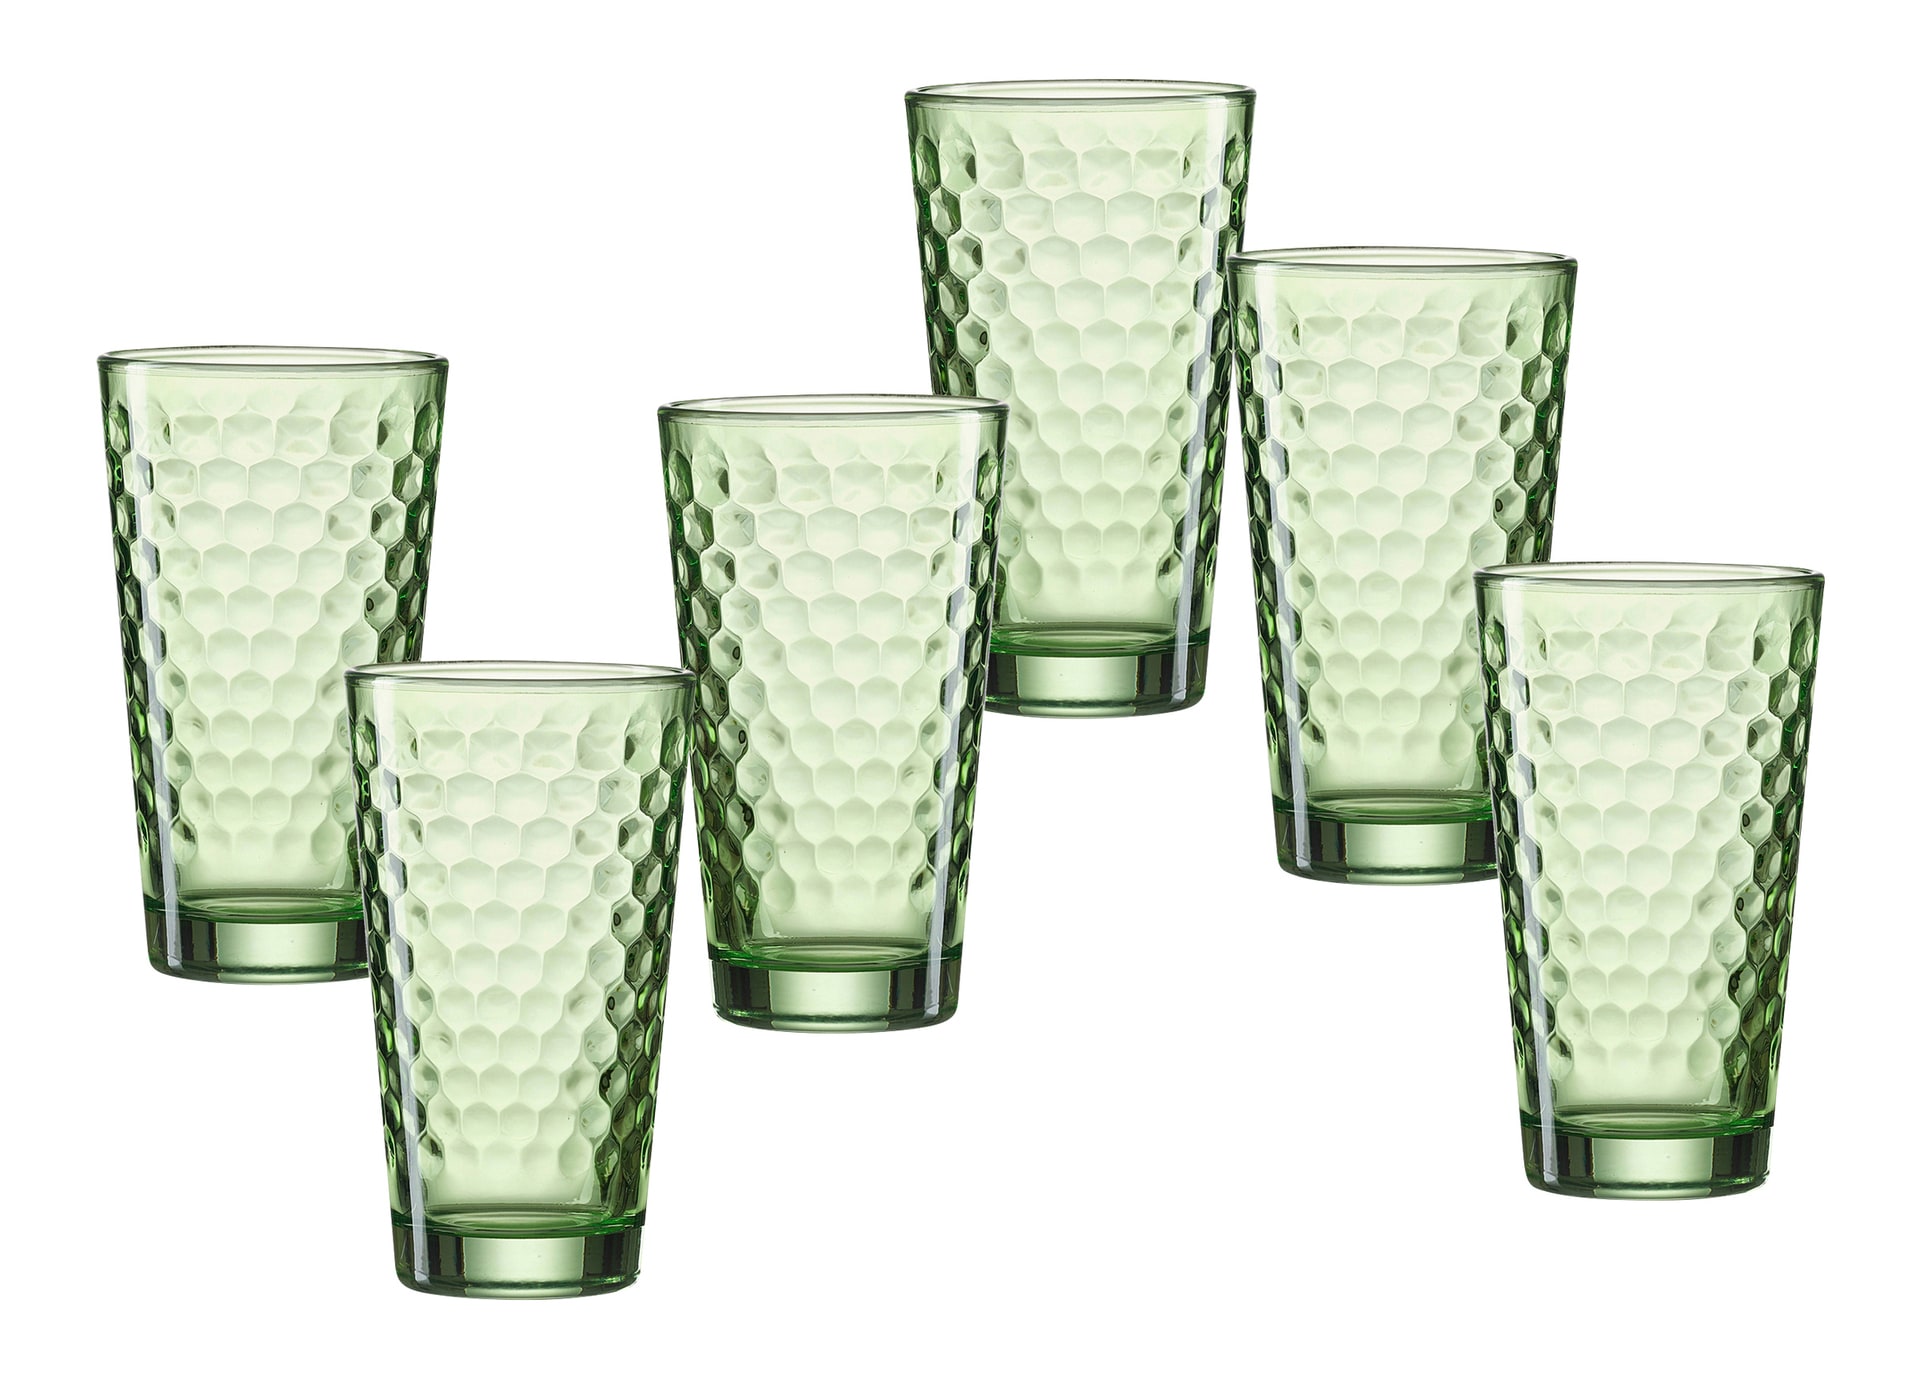 Ritzenhoff & Breker Longdrinkglas FAVO 6er Set 400 ml grün Glas